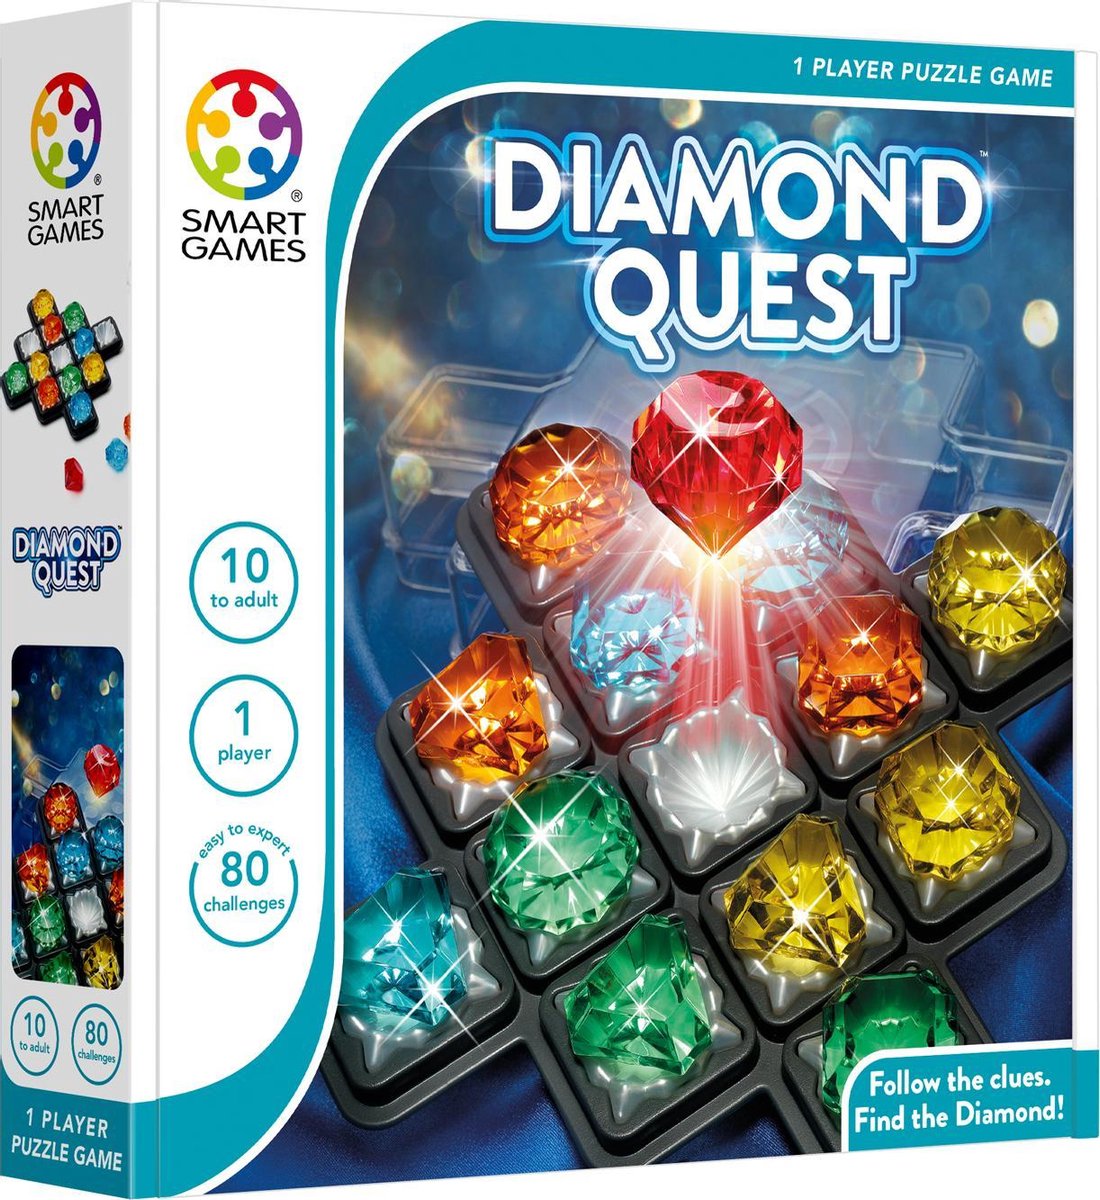   Diamond Quest Volwassenen en kinderen Educatief spel